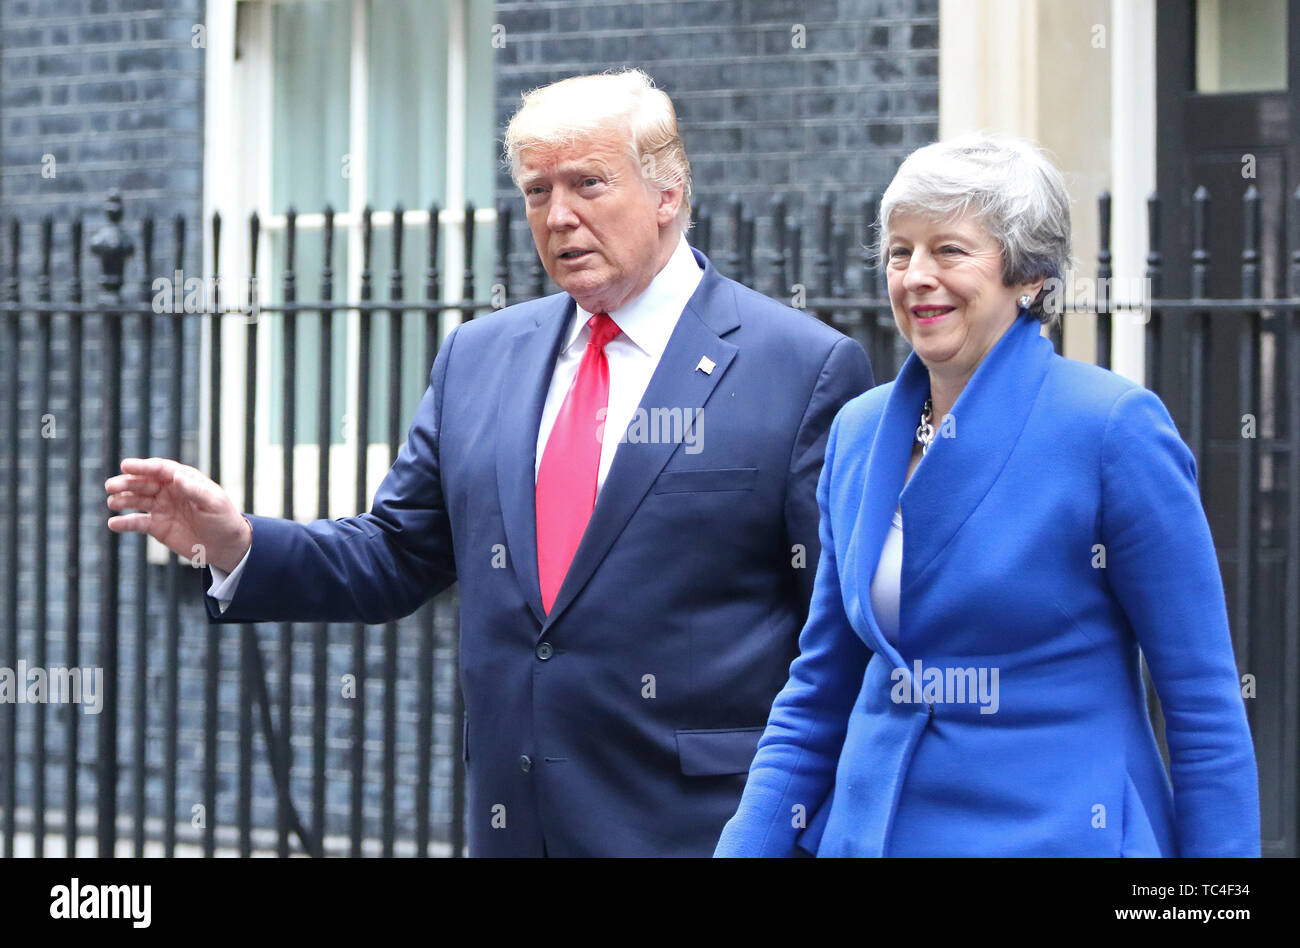 Theresa Maggio e Donald Trump, Stati Uniti d'America visita presidenziale per il Regno Unito, Downing Street, Londra, Regno Unito, 04 giugno 2019, Foto di ri Foto Stock